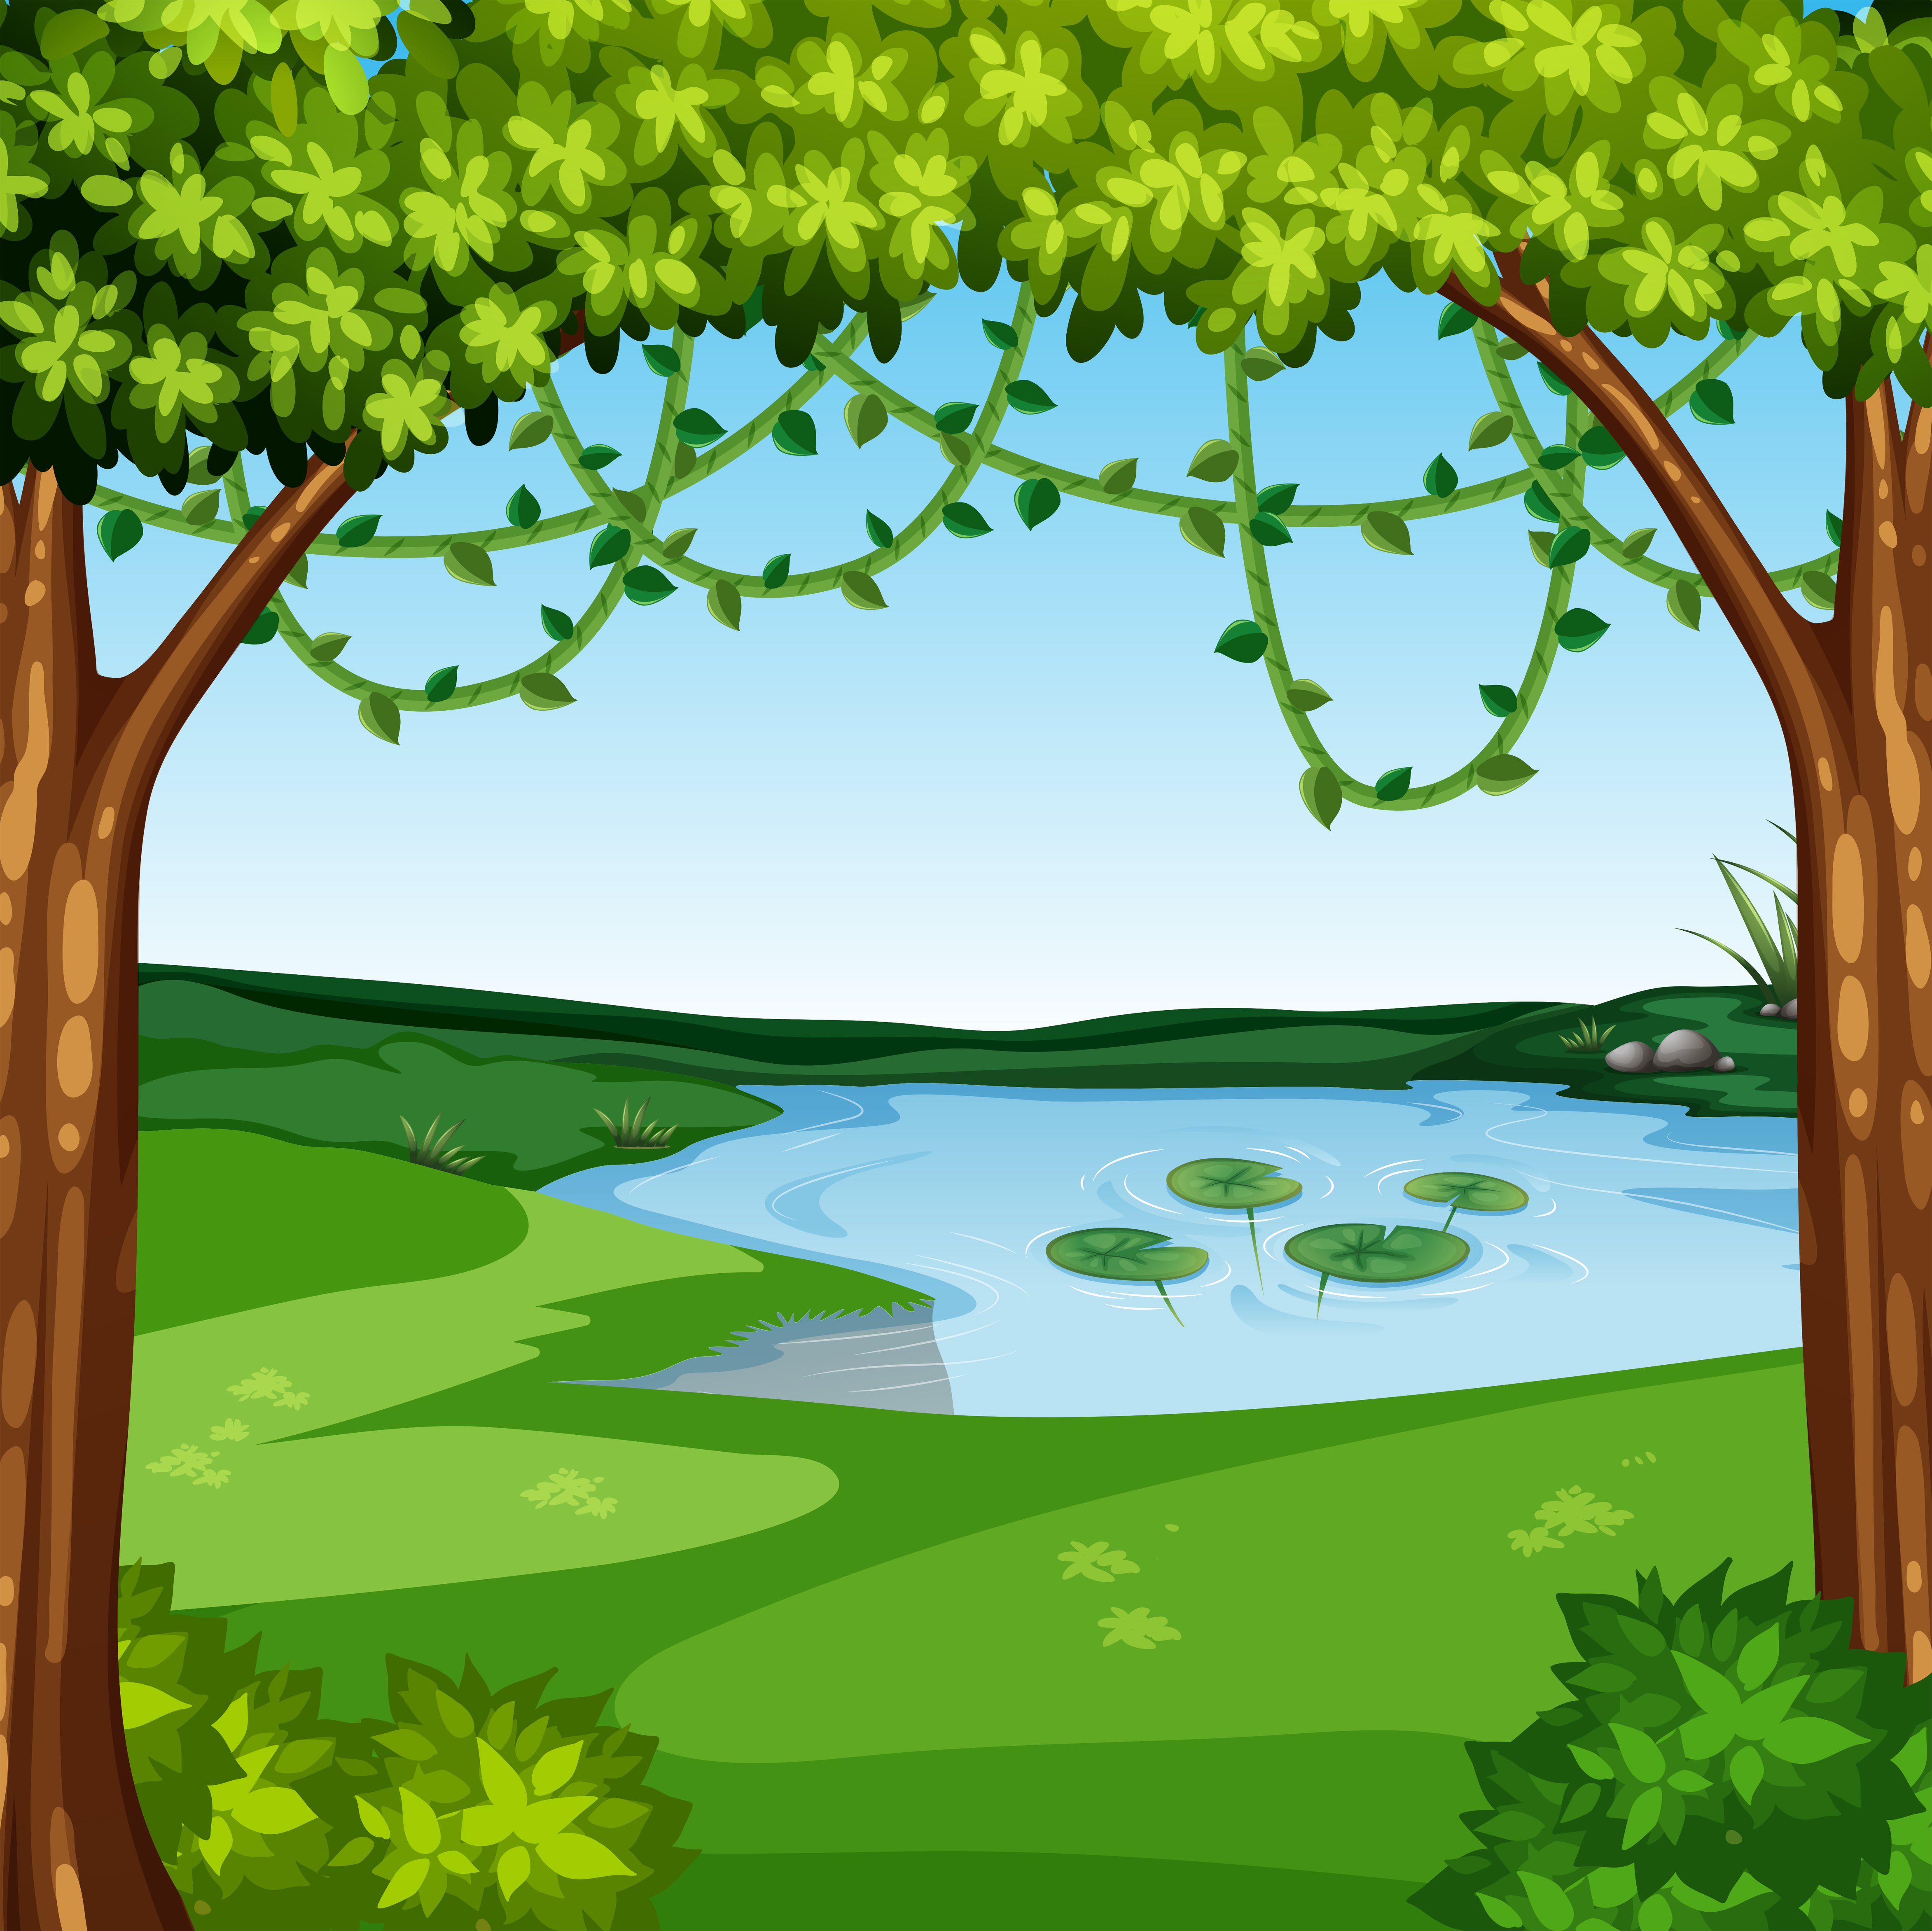 A beautiful jungle landscape 293145 - Download Free Vectors, Clipart Graphics & Vector Art